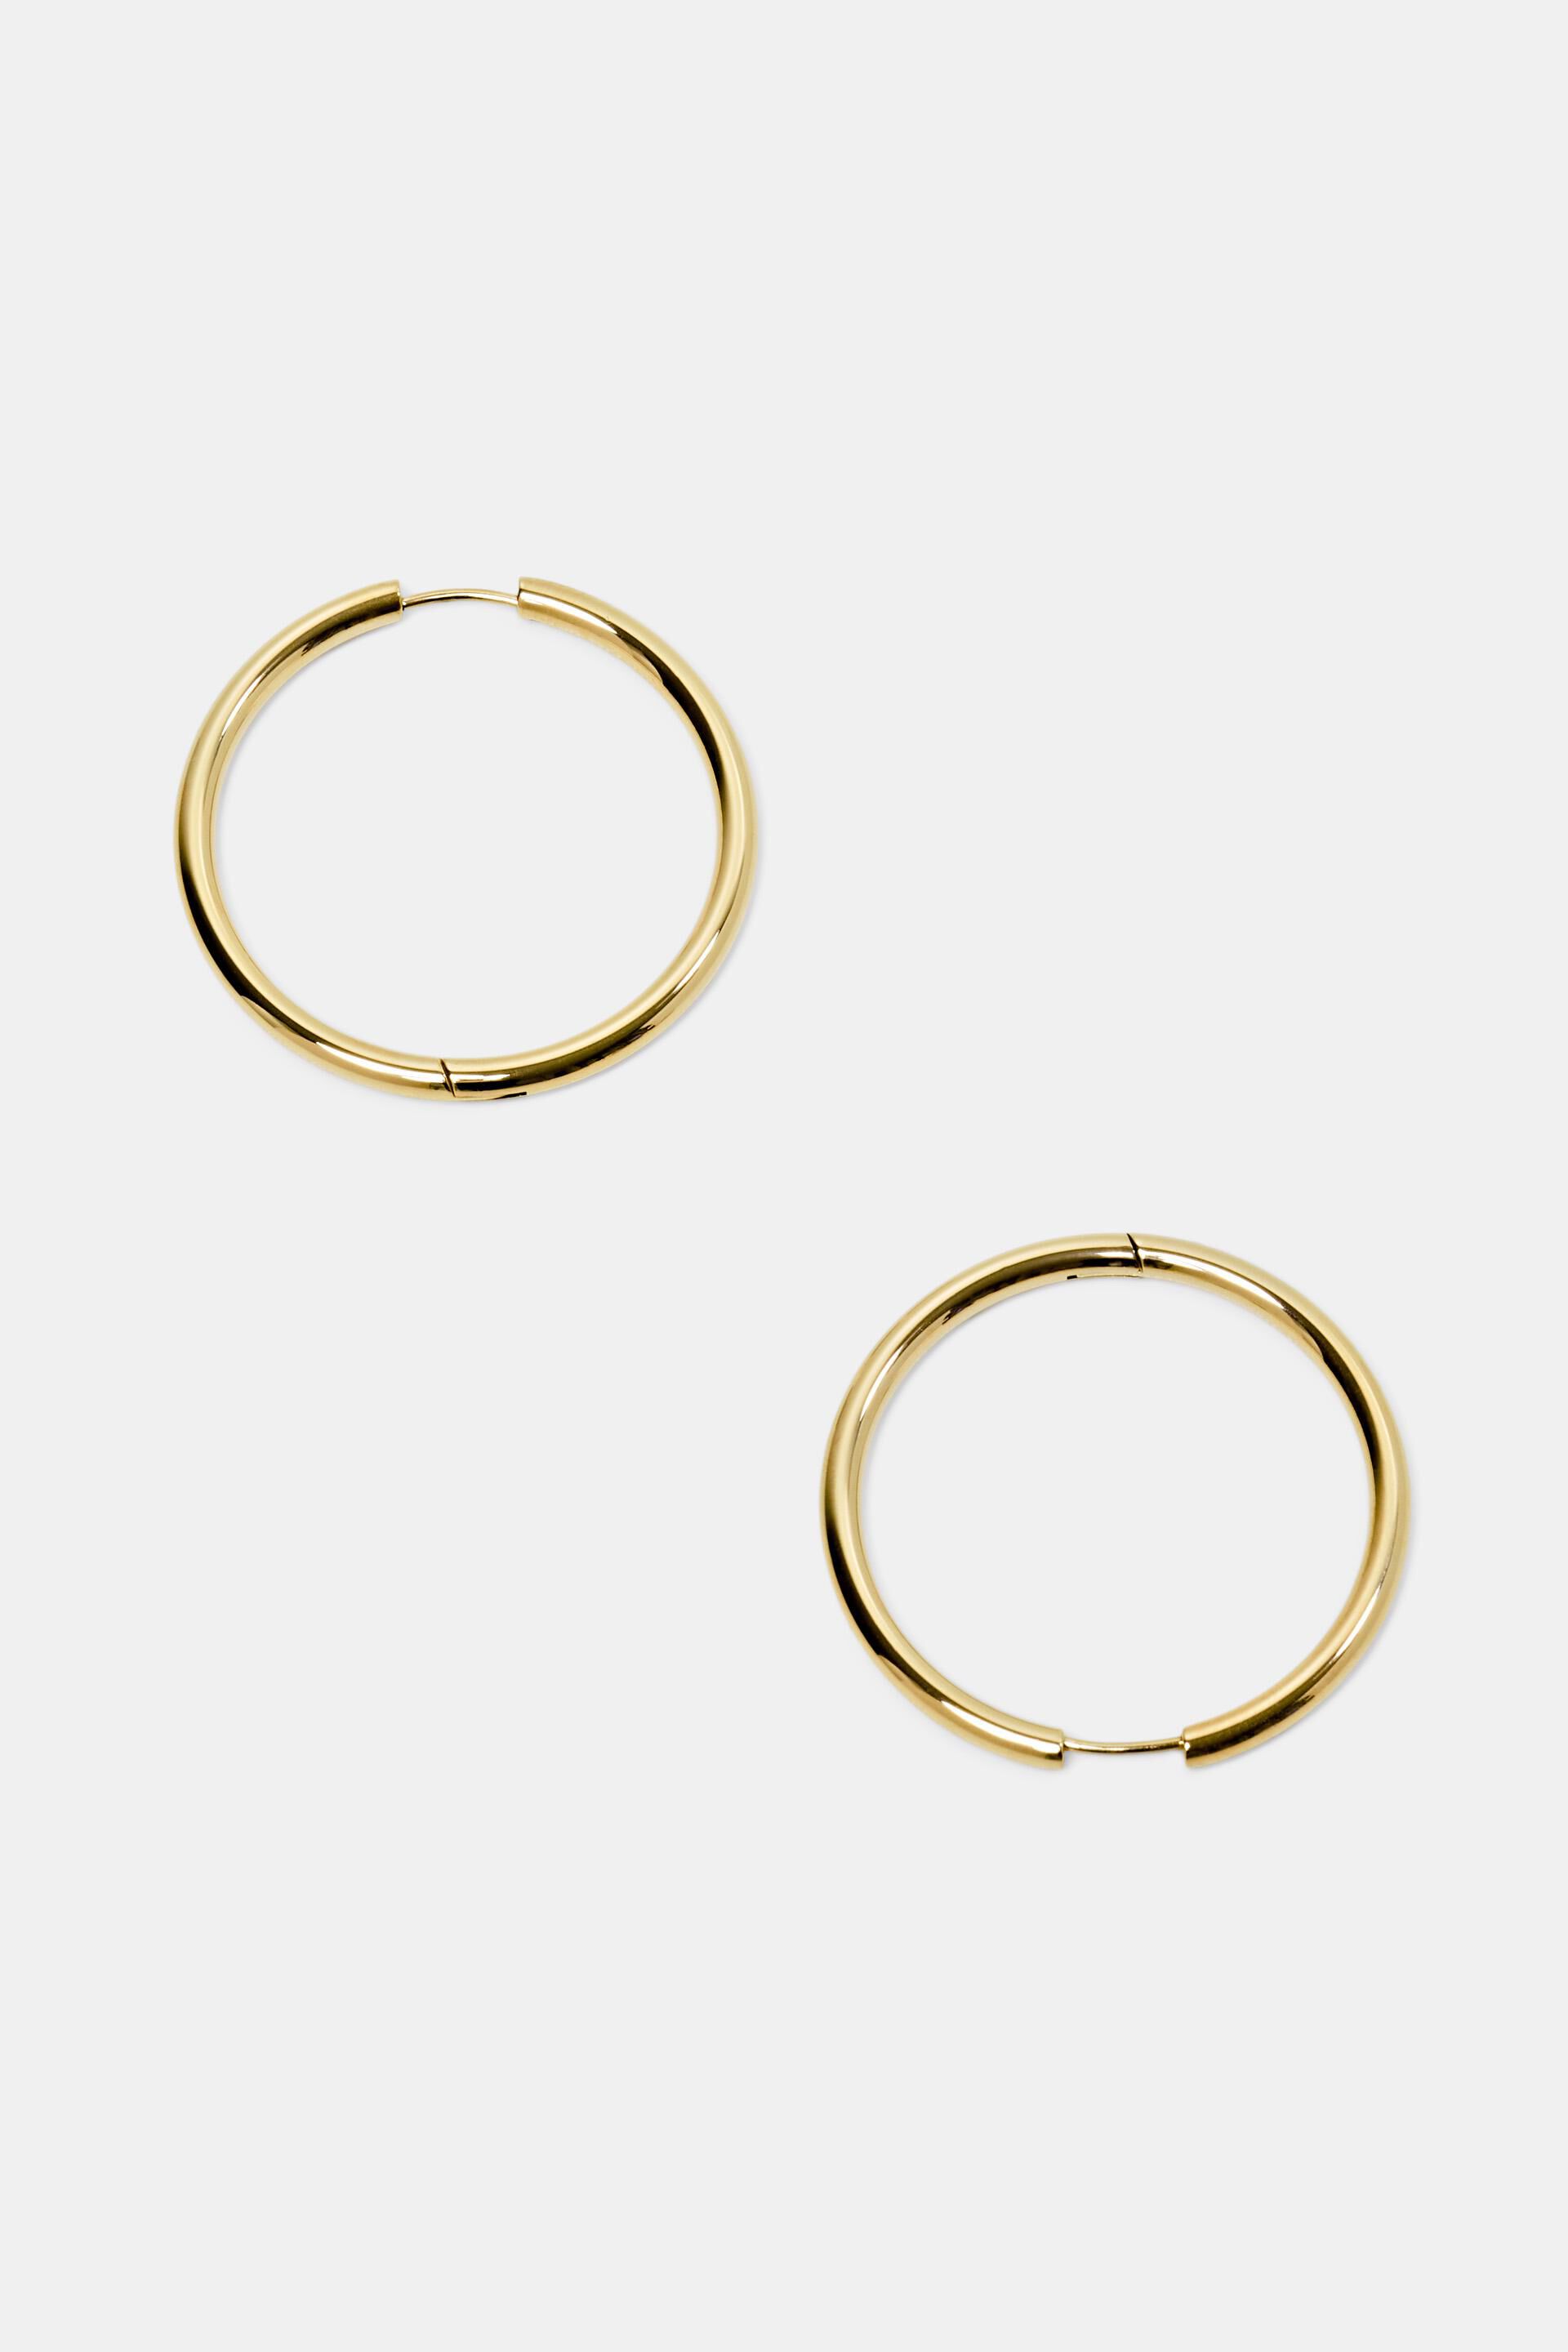 Esprit steel Hoop stainless earrings,